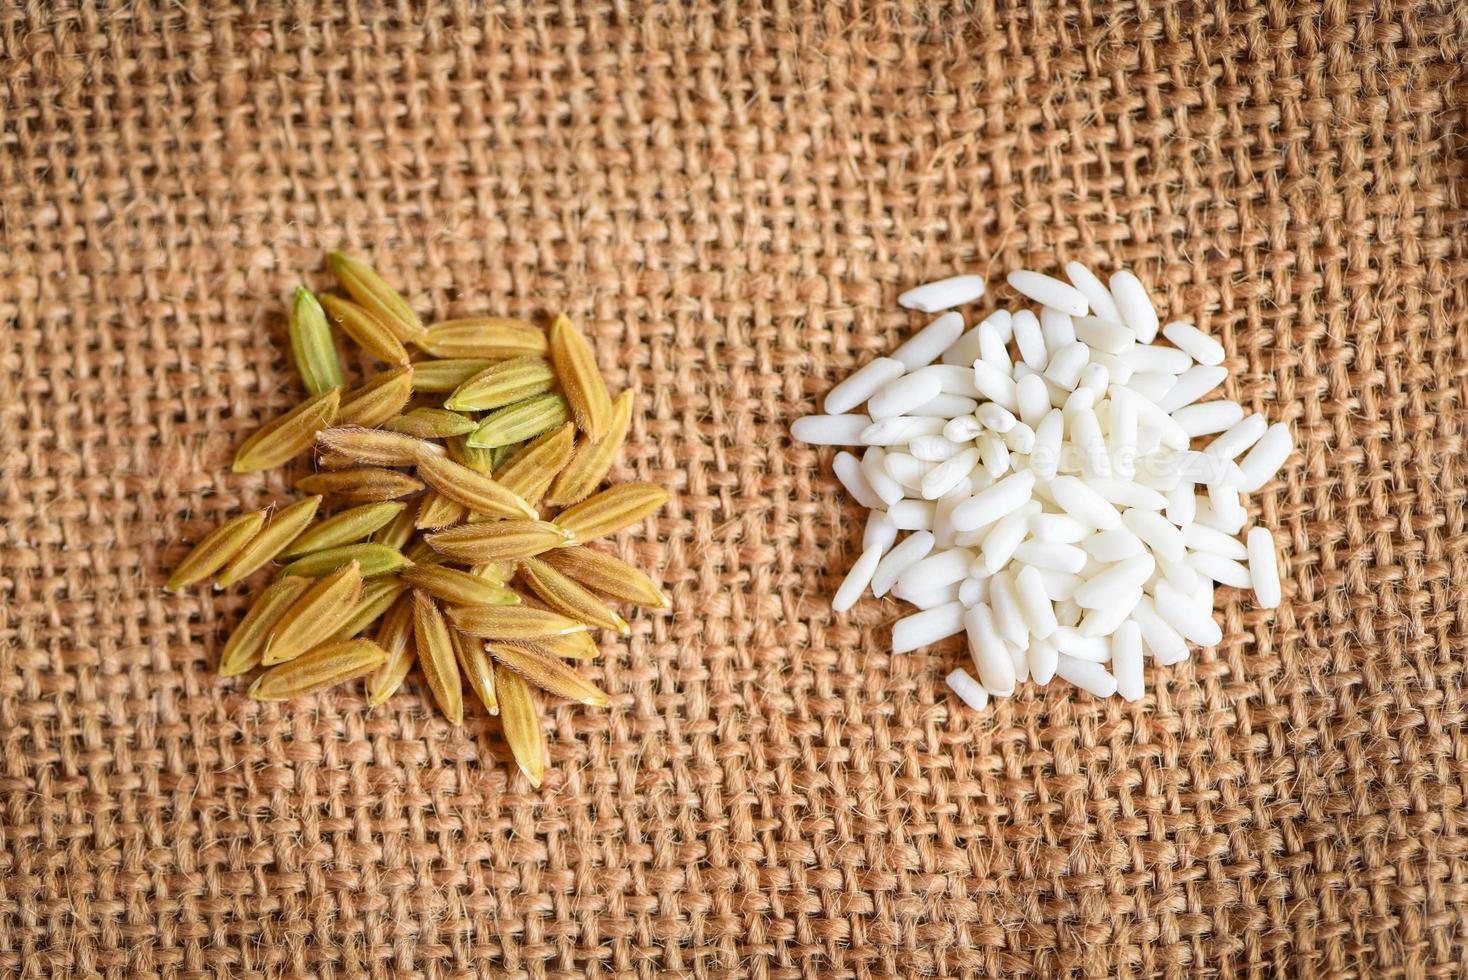 arroz branco de jasmim e arroz em casca amarelo em saco colhido arroz rasgado, arroz de colheita e conceito de cozimento de grãos alimentícios foto